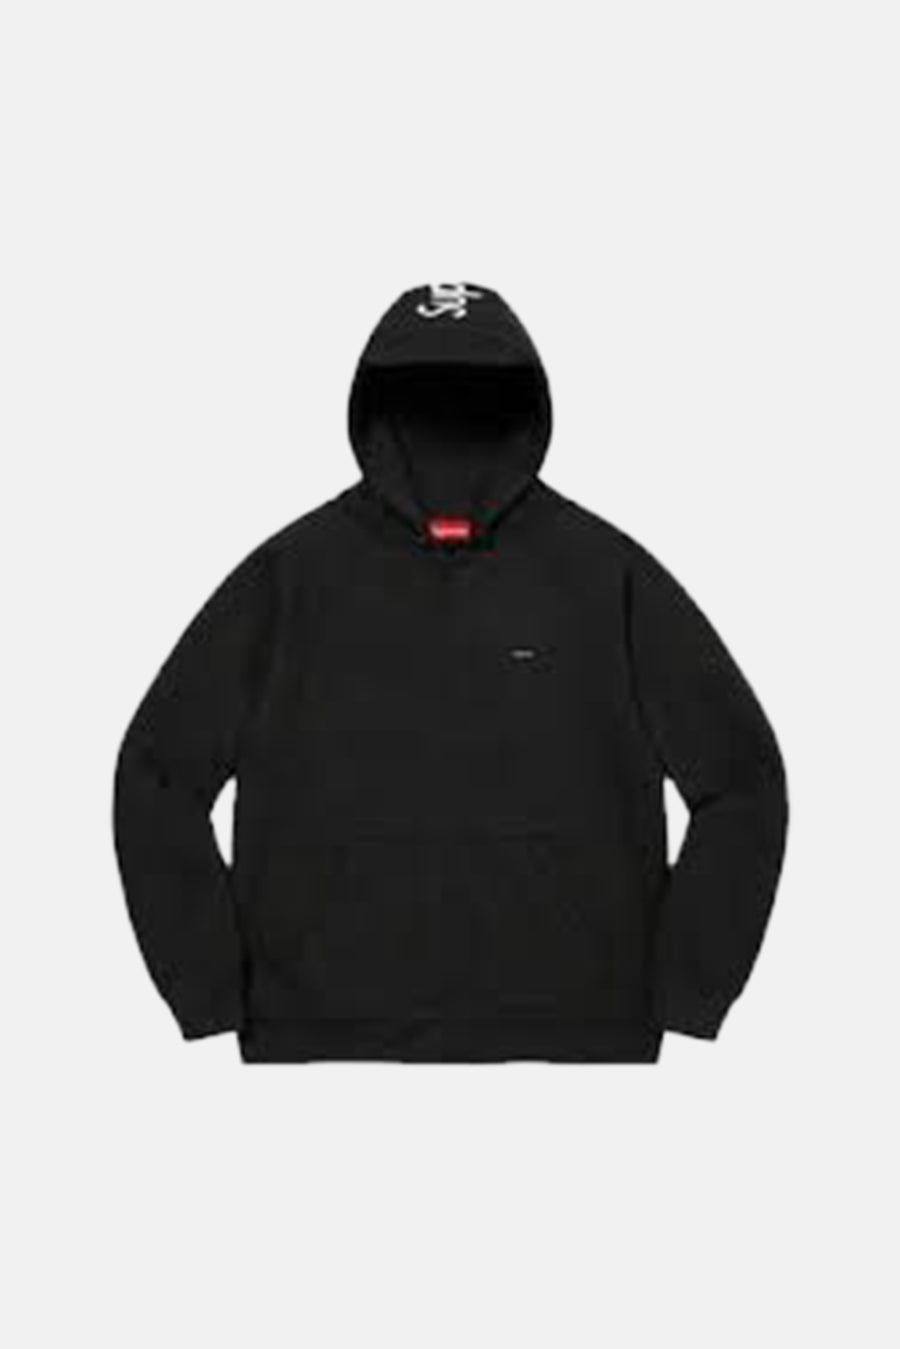 Supreme Brim Zip Up Hooded Sweatshirt Black